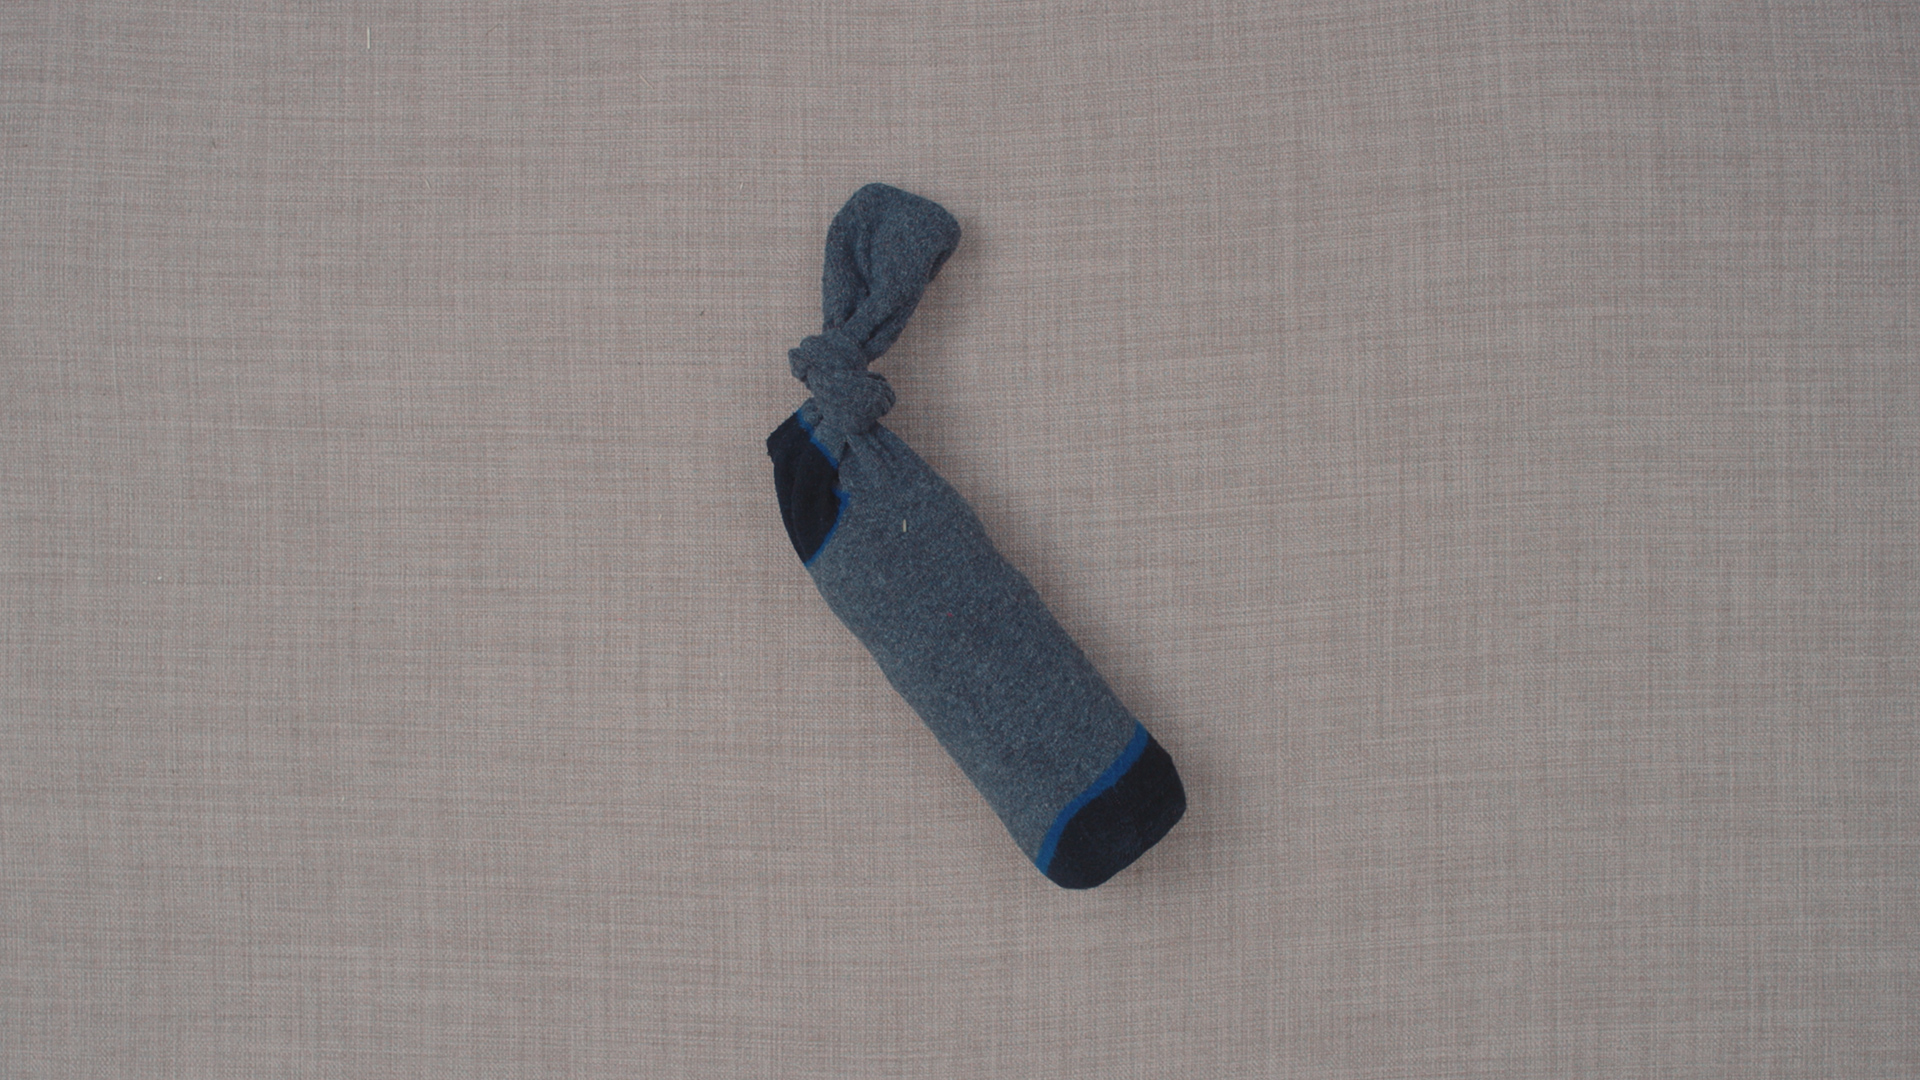 Water bottle in sock